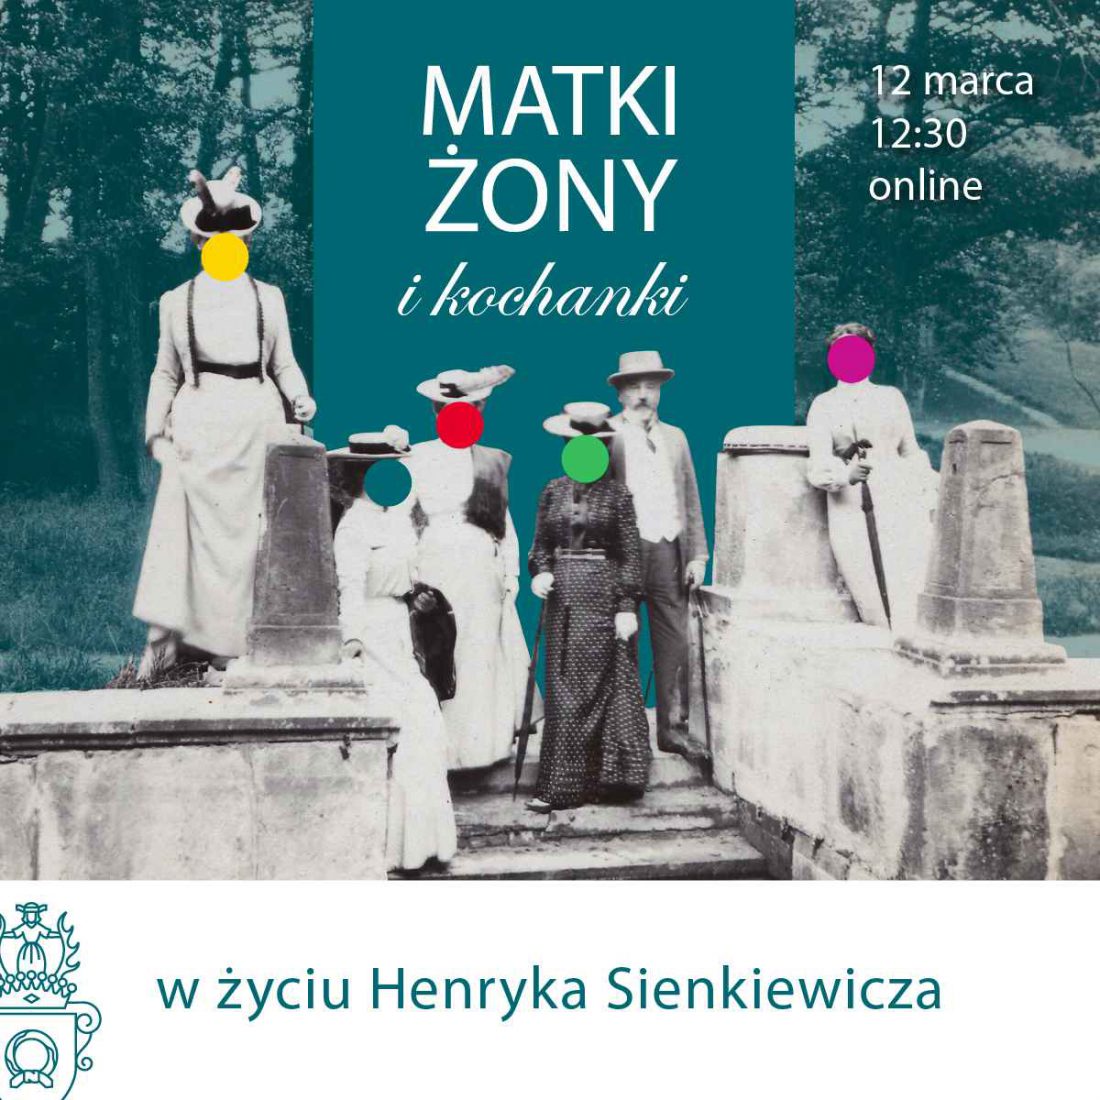 Henryk Sienkiewicz stoi w otoczeniu kobiet z kolorowymi kropkami zamiast twarzy